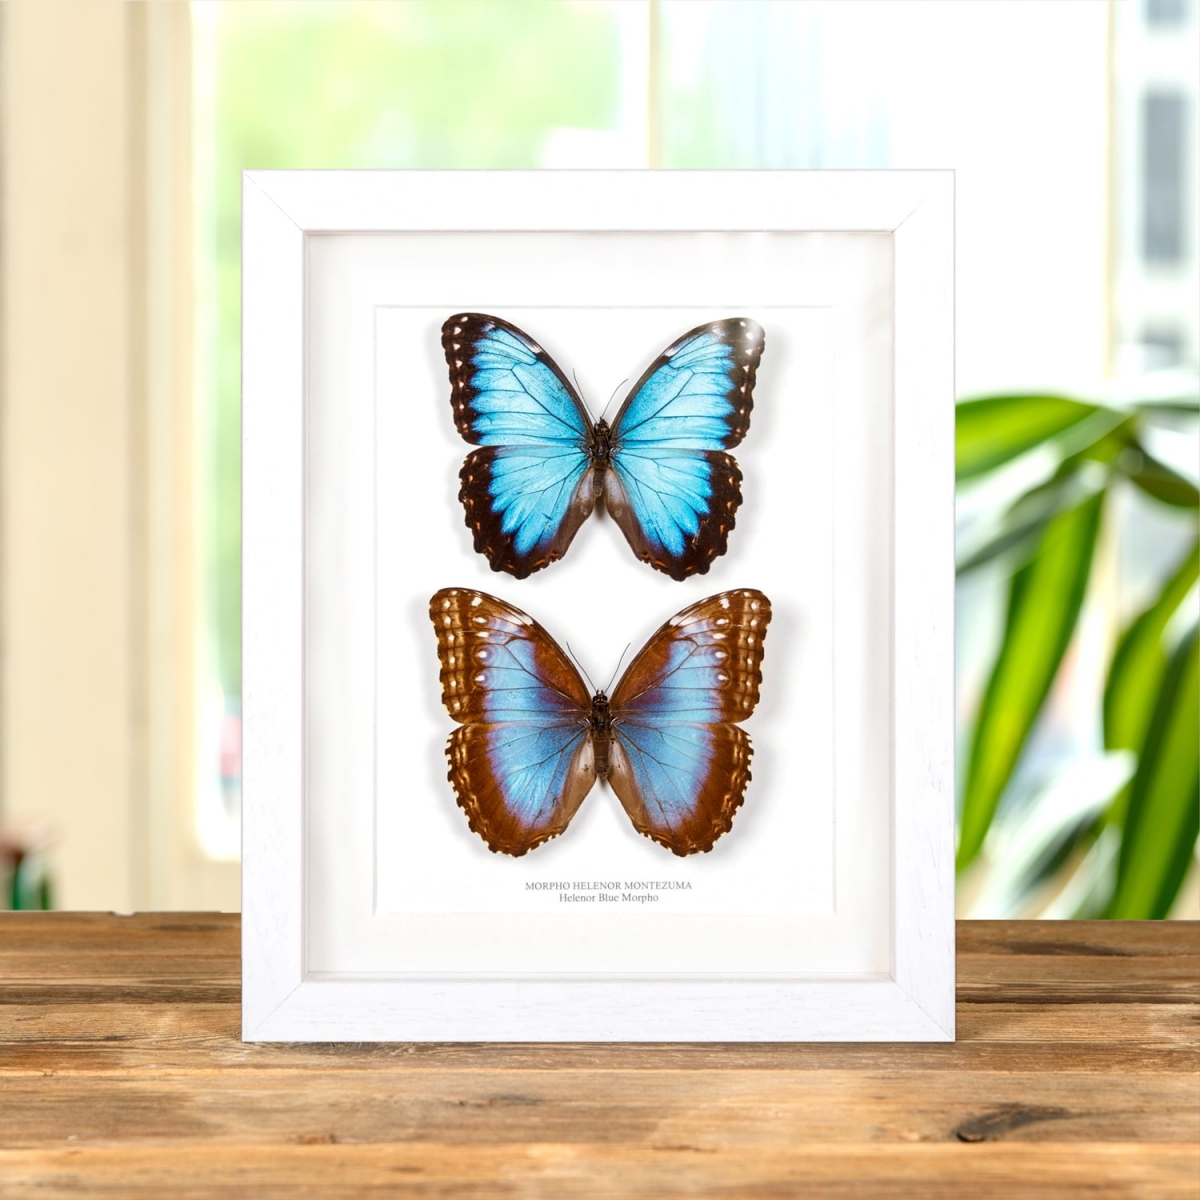 Helenor Blue Morpho Butterfly Male & Female Pair In Box Frame (Morpho helenor montezuma)